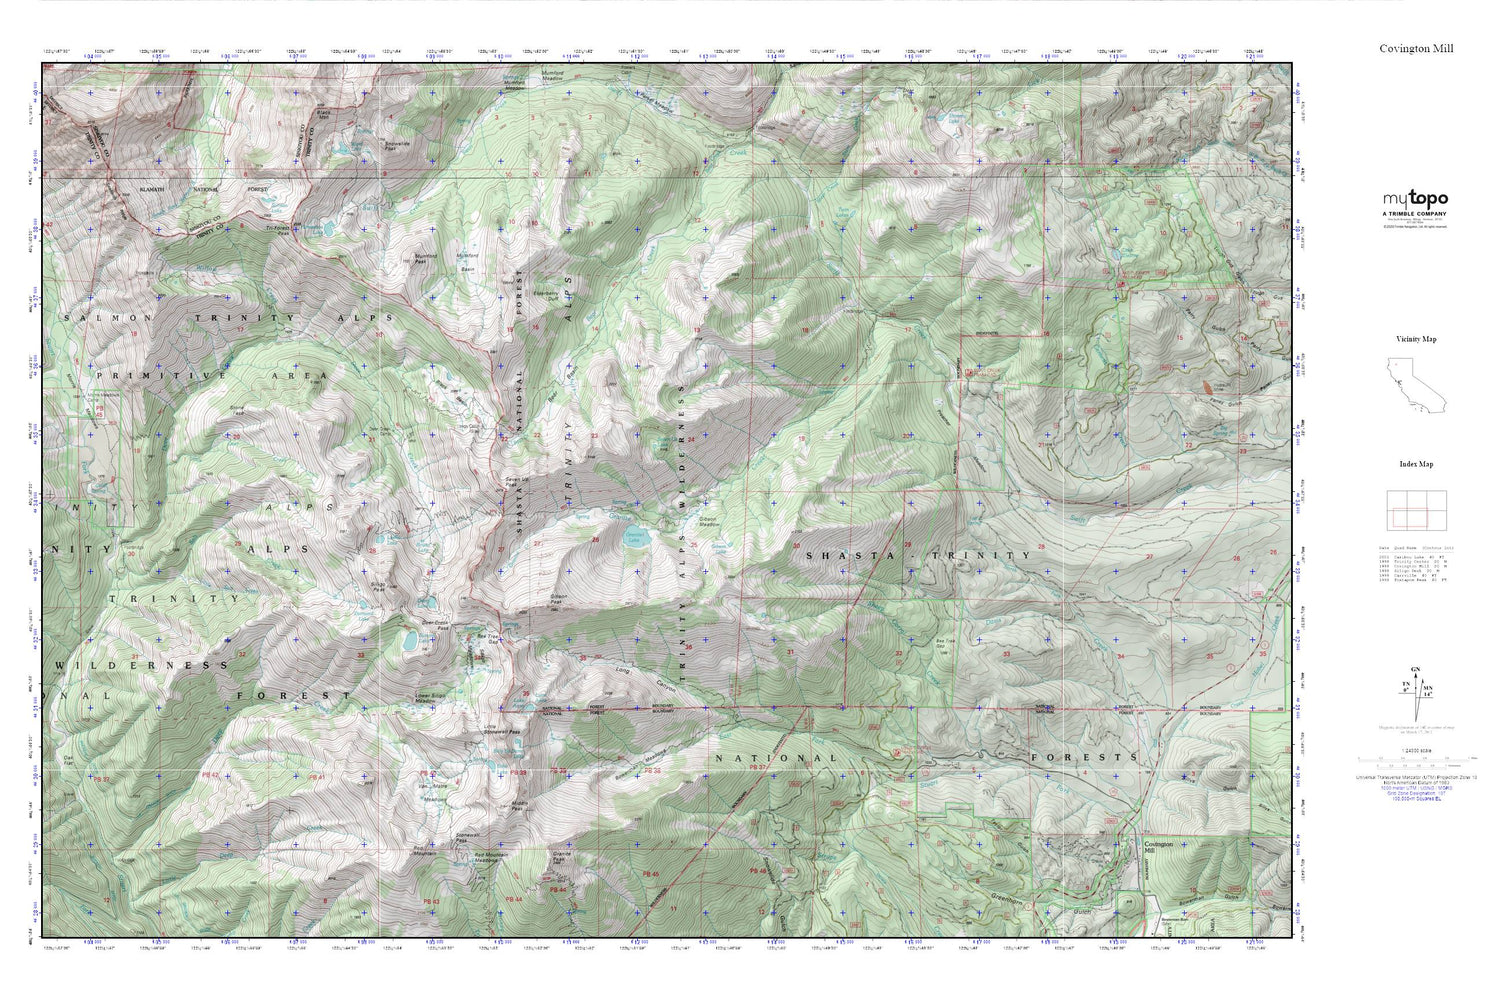 Covington Mill MyTopo Explorer Series Map Image